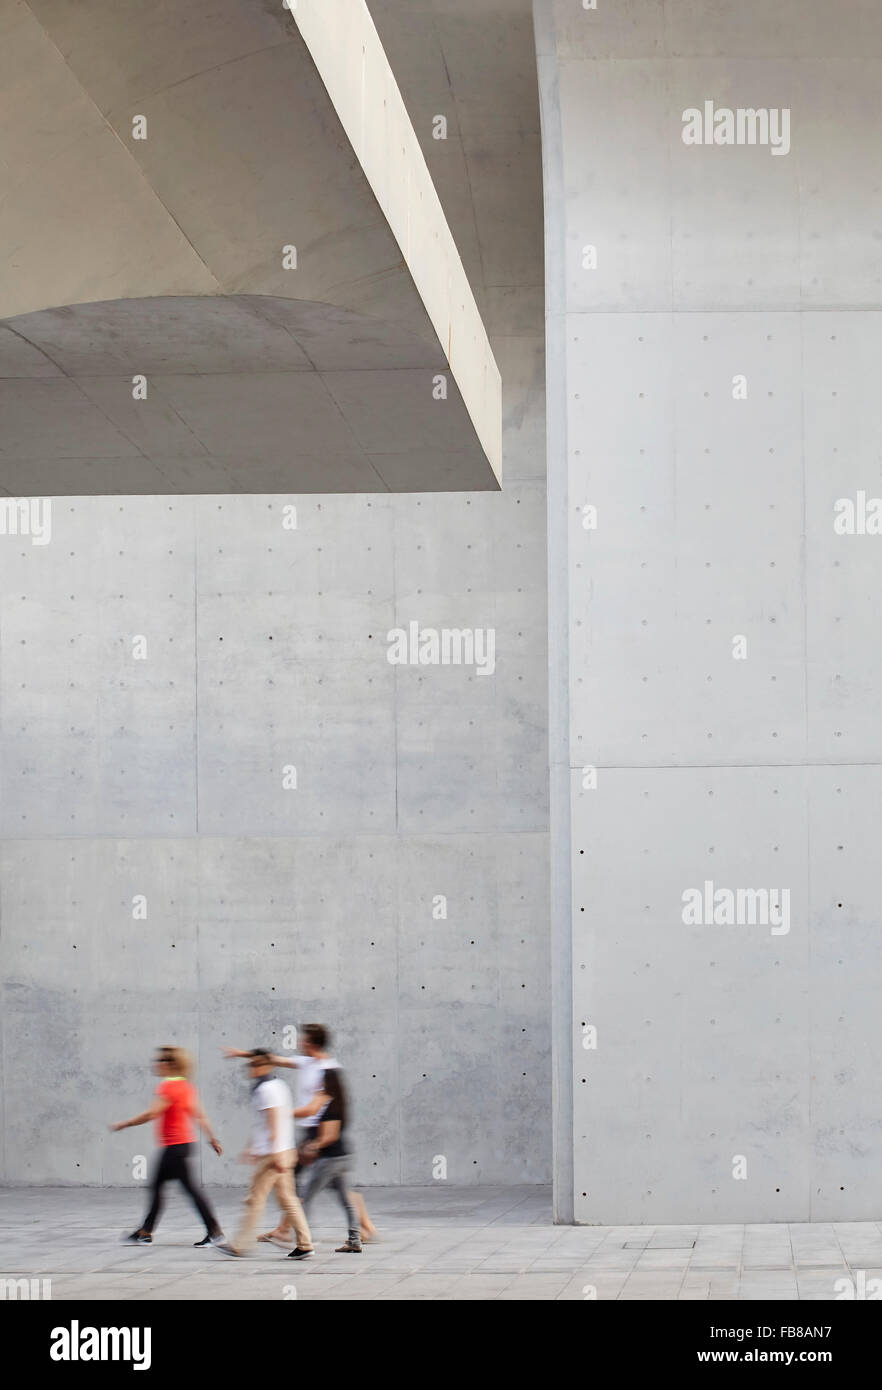 Detail of cast concrete surfaces. Long Museum West Bund, Shanghai, China. Architect: Atelier Deshaus, 2015. Stock Photo